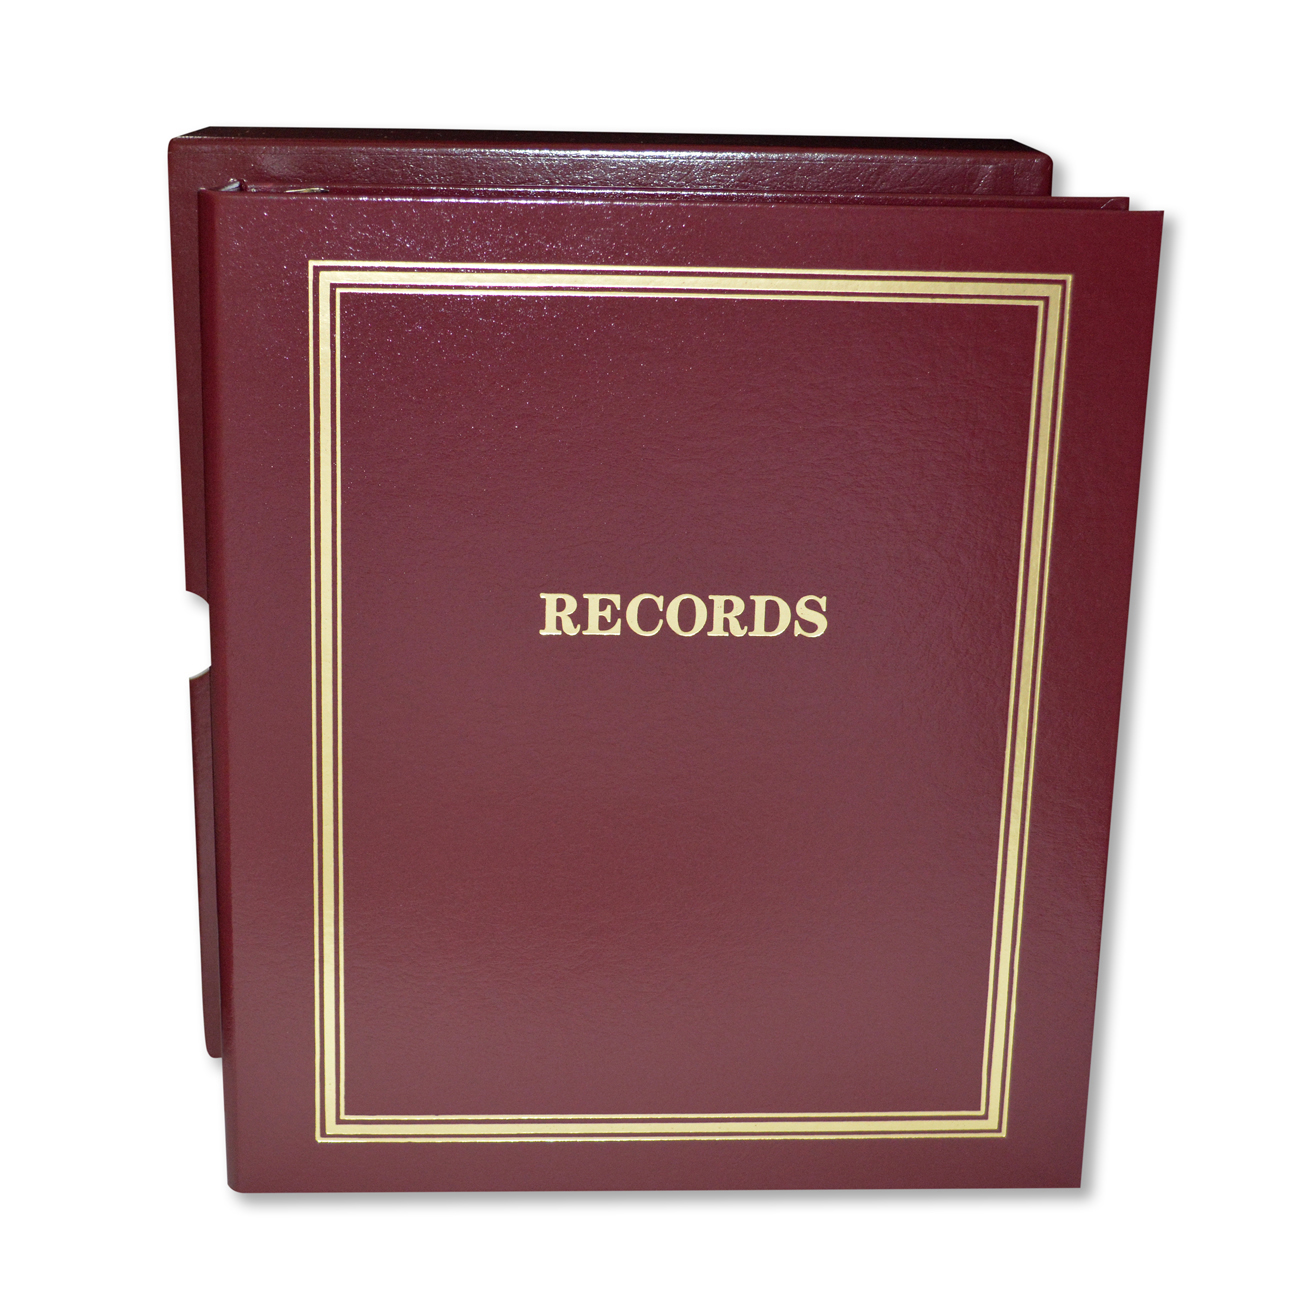 Estate Planning "Records" Portfolio